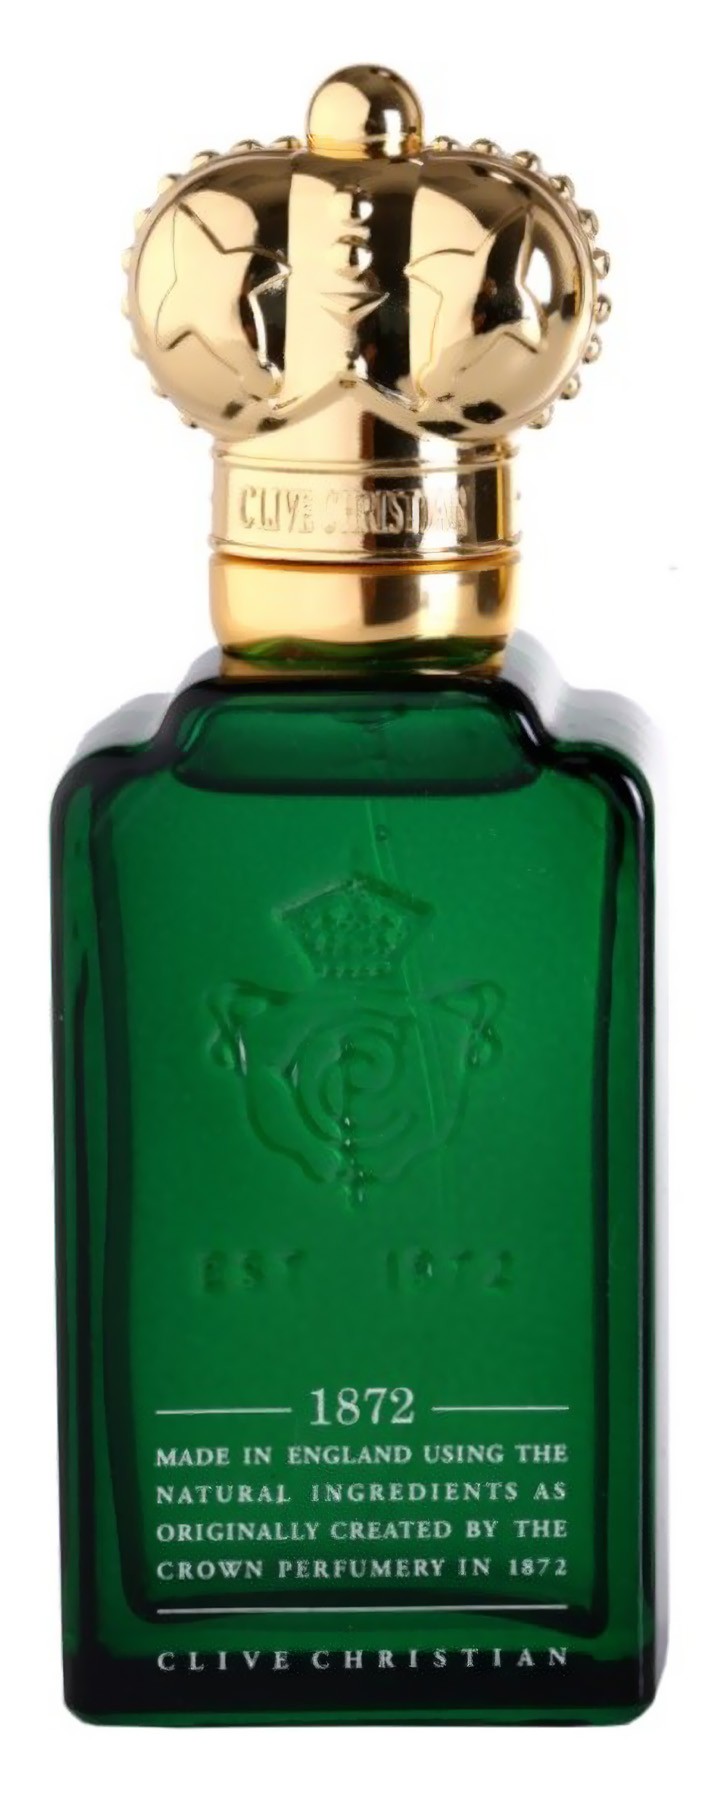 Clive Christian 1872 Eau de parfume Woman 50ml CCH0108